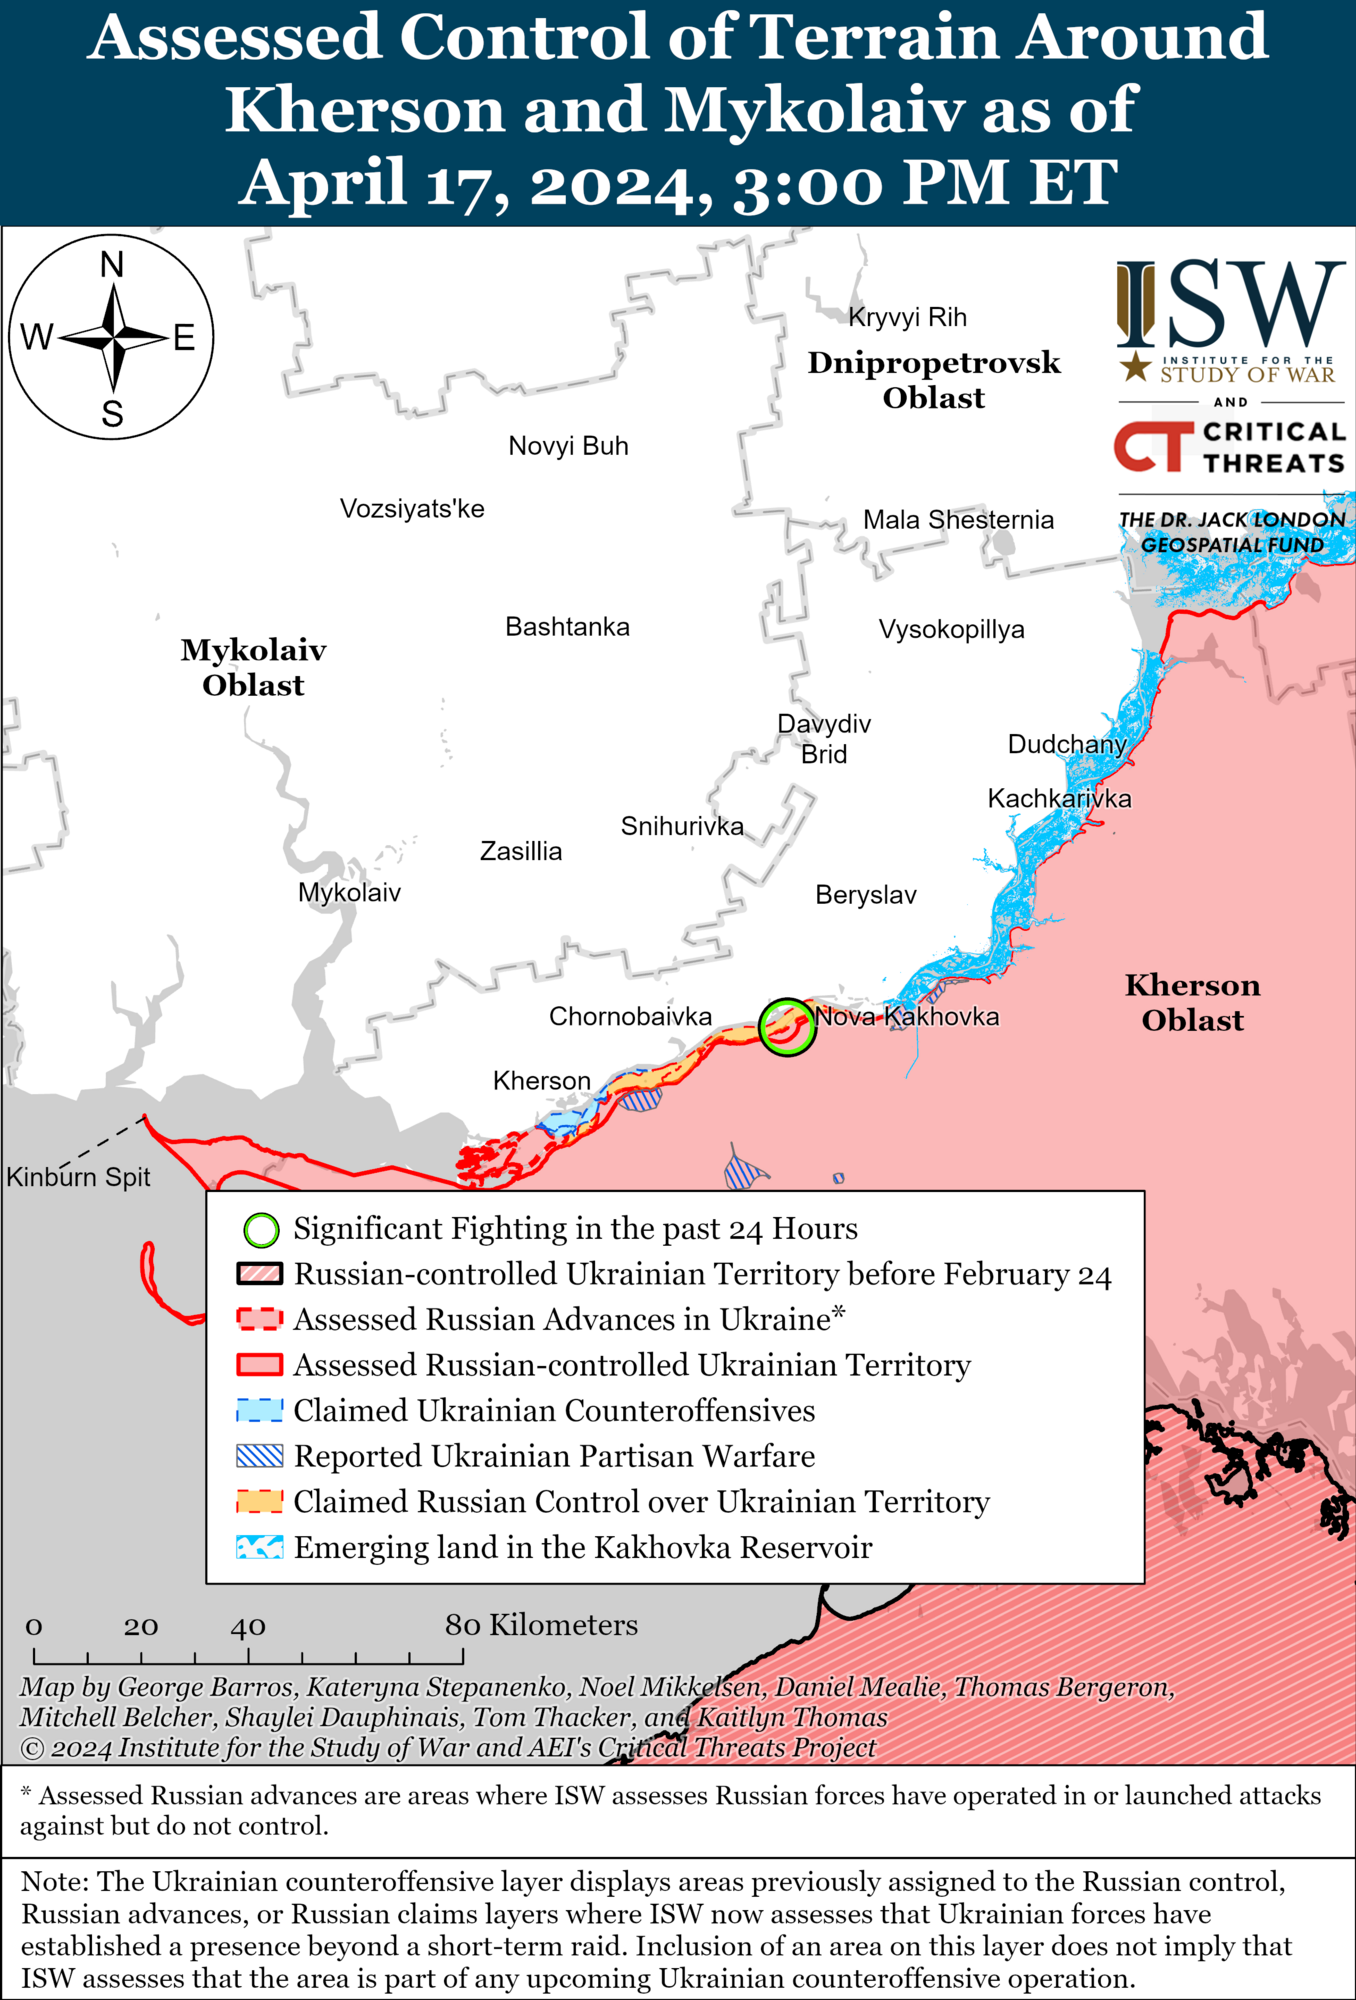 Війська РФ проводять наступальні операції в районі Авдіївки, на лівобережжі Херсона тривають позиційні бої: аналіз ISW